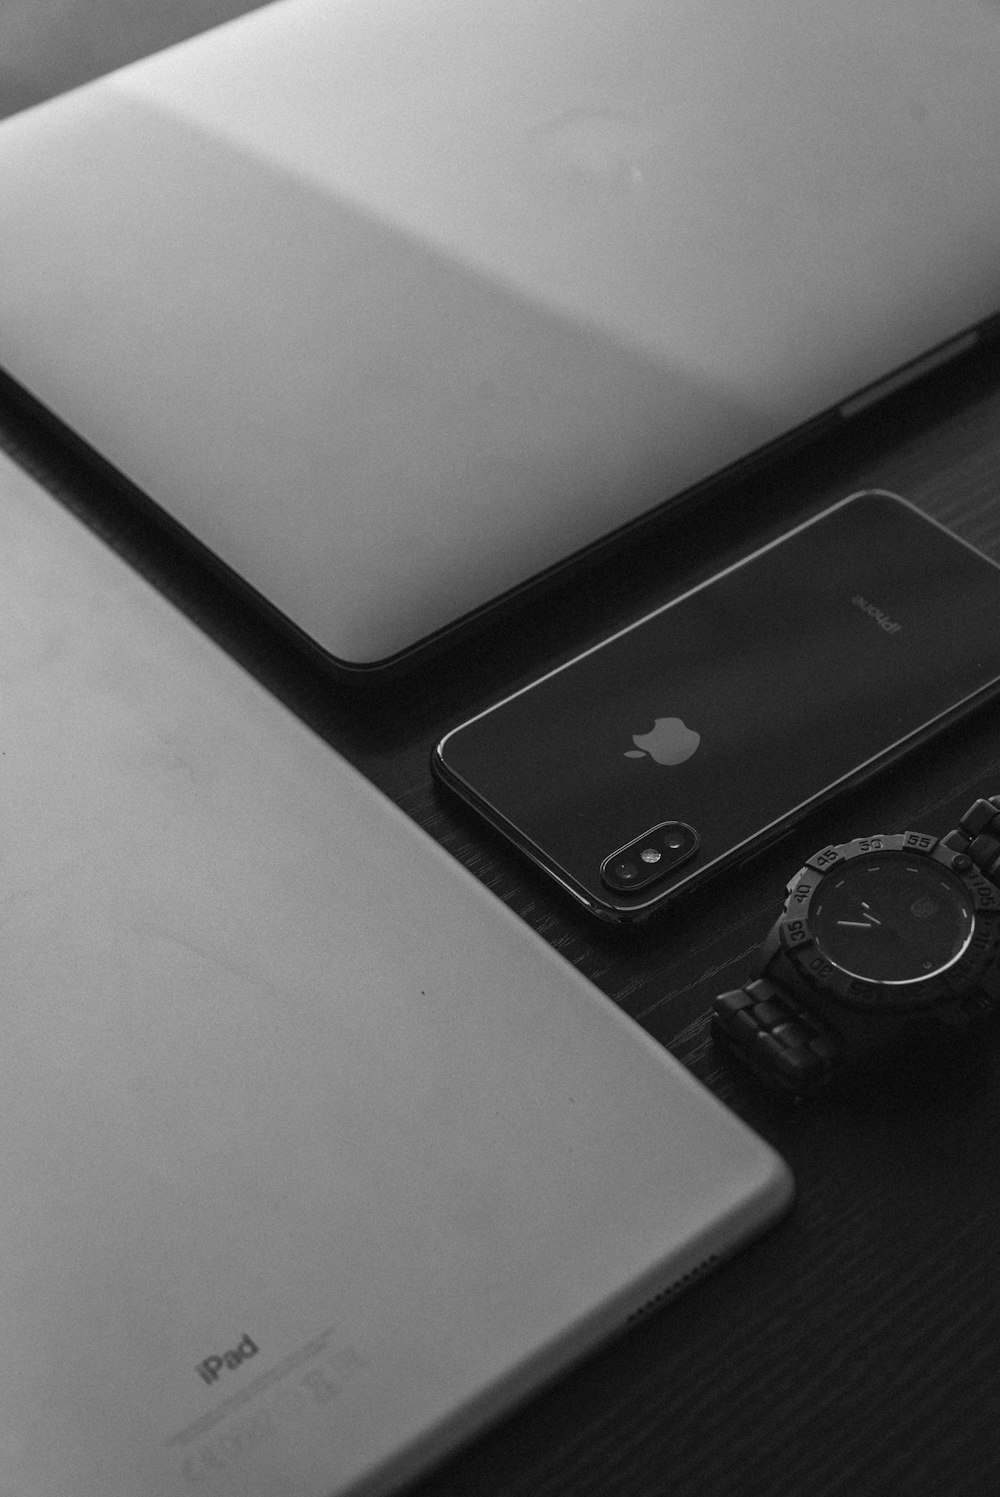 シルバーのApple MacBook、シルバーのiPad、スペースグレイのiPhone X、ブラックのアナログウォッチ